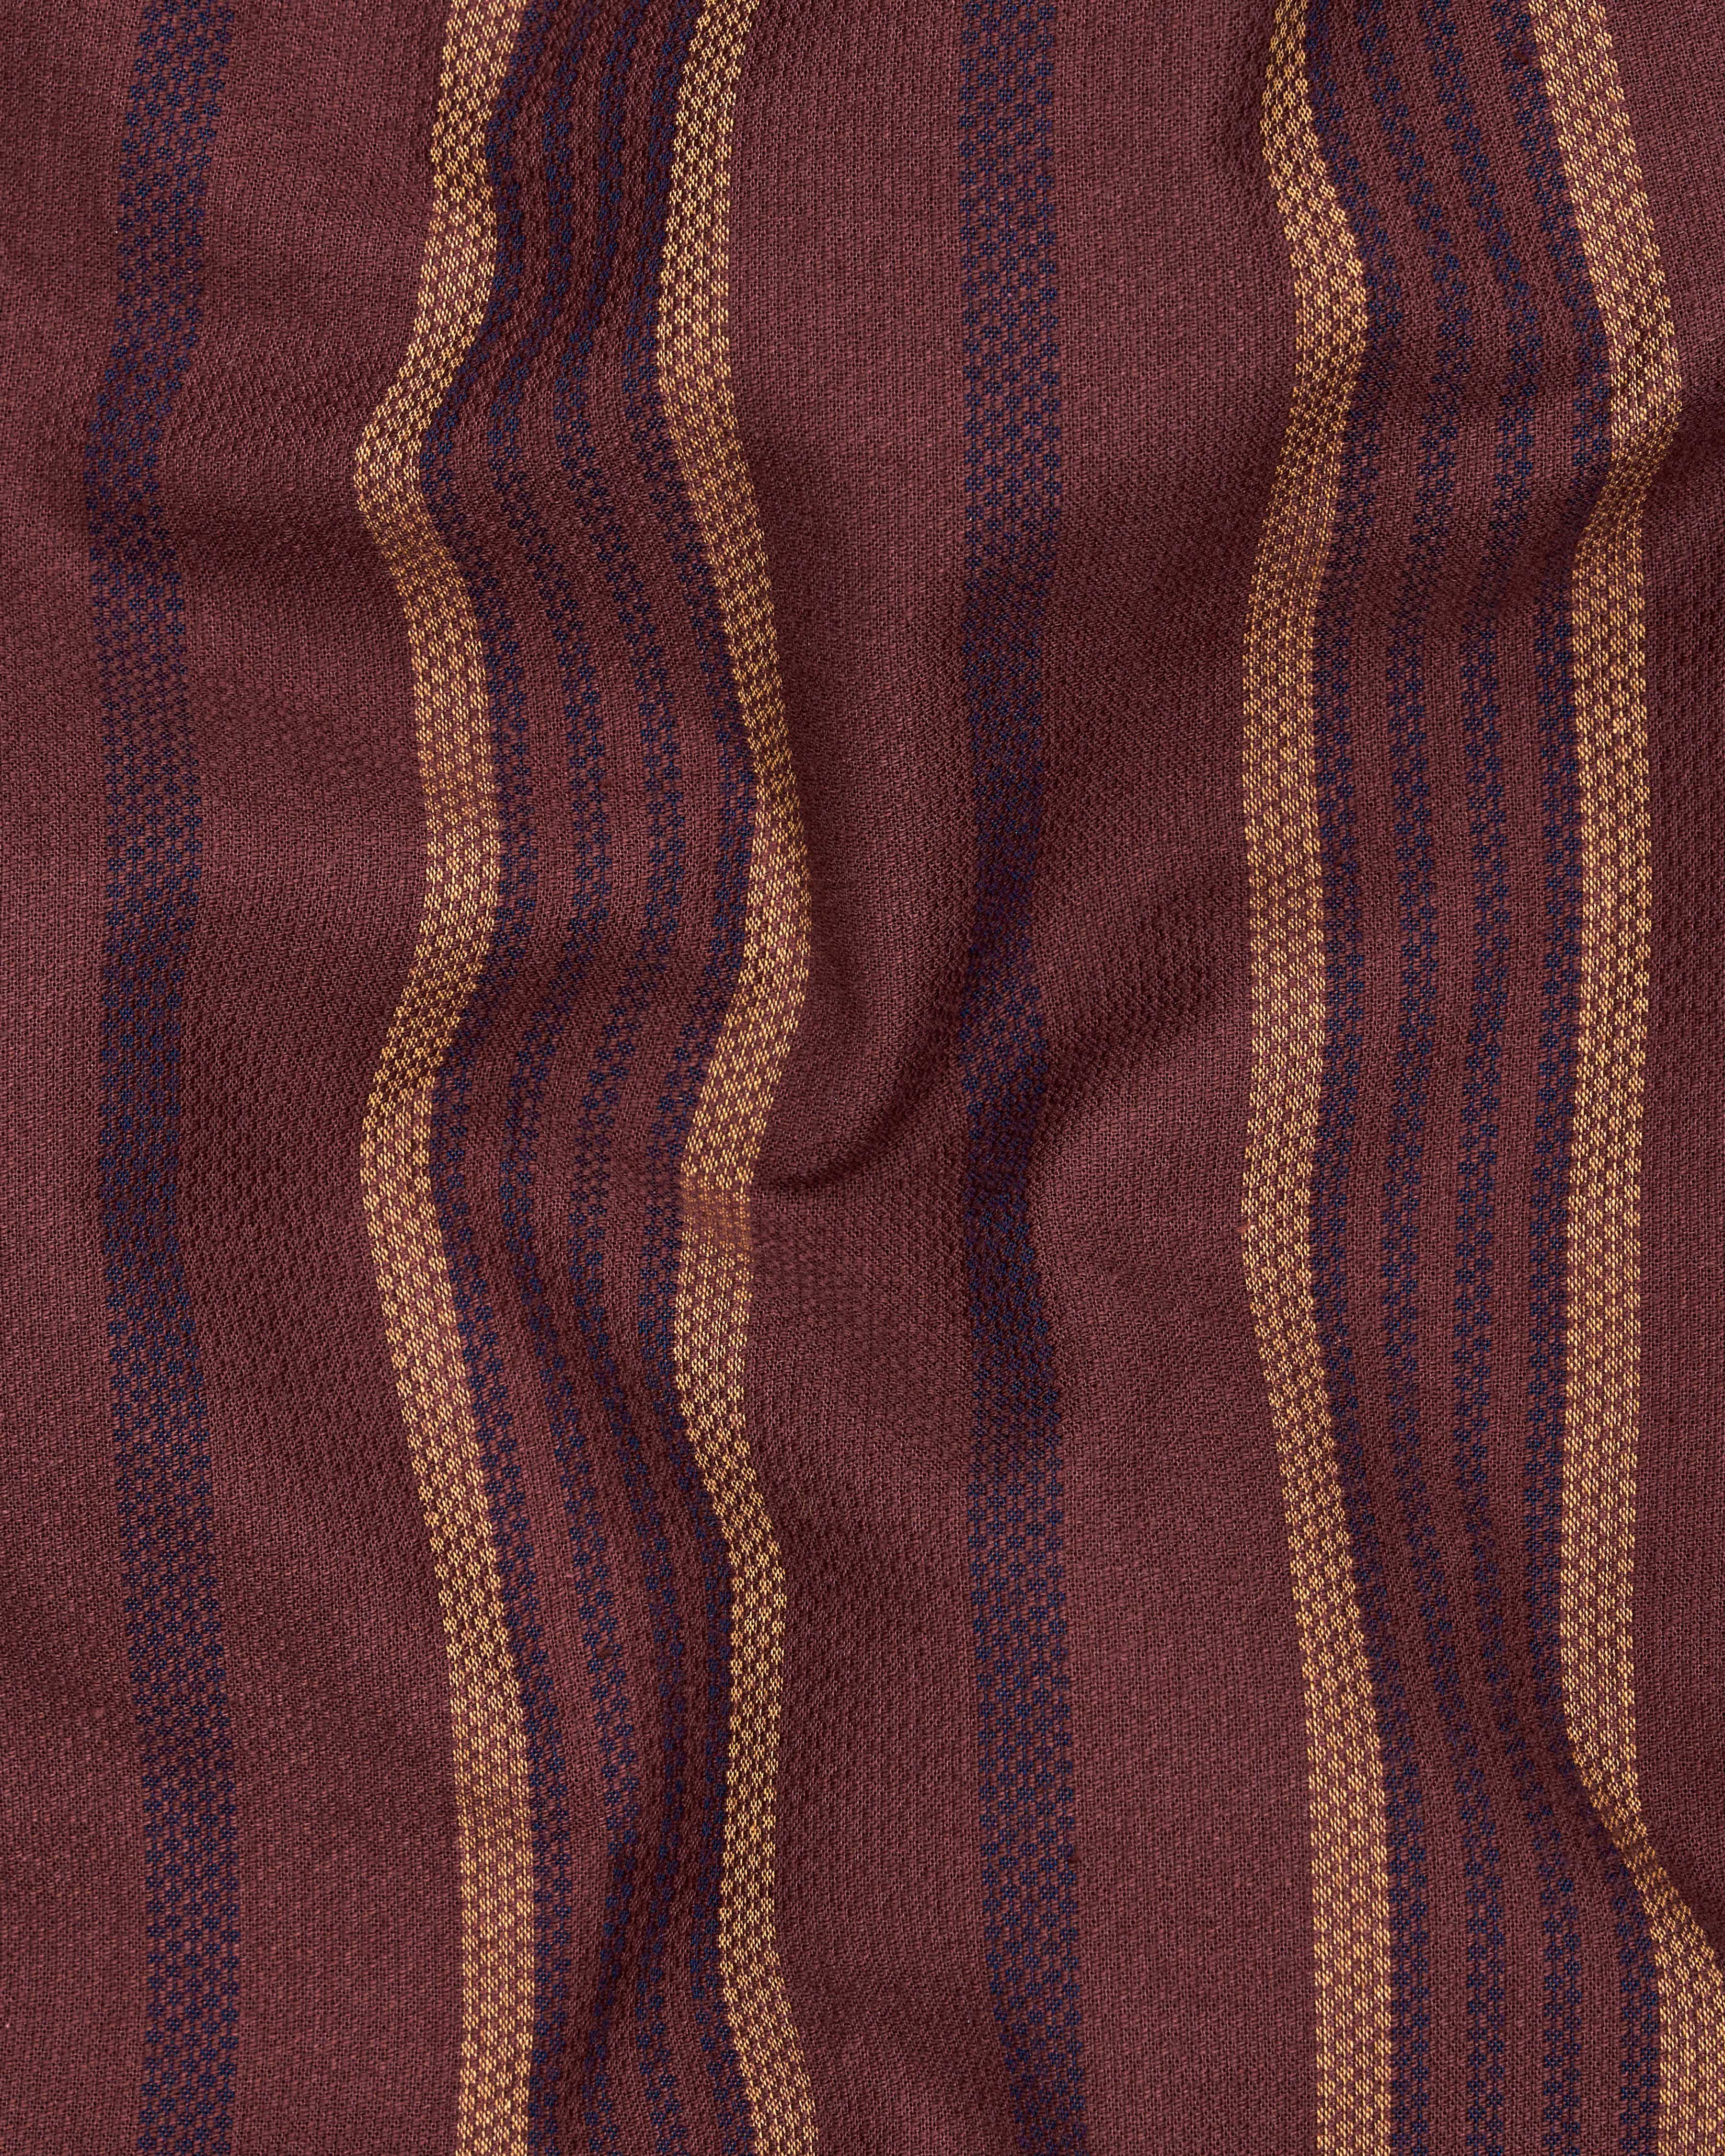 Sanguine Brown Multicolour Striped Dobby Textured Premium Giza Cotton Shirt  8747-CC-38,8747-CC-H-38,8747-CC-39,8747-CC-H-39,8747-CC-40,8747-CC-H-40,8747-CC-42,8747-CC-H-42,8747-CC-44,8747-CC-H-44,8747-CC-46,8747-CC-H-46,8747-CC-48,8747-CC-H-48,8747-CC-50,8747-CC-H-50,8747-CC-52,8747-CC-H-52